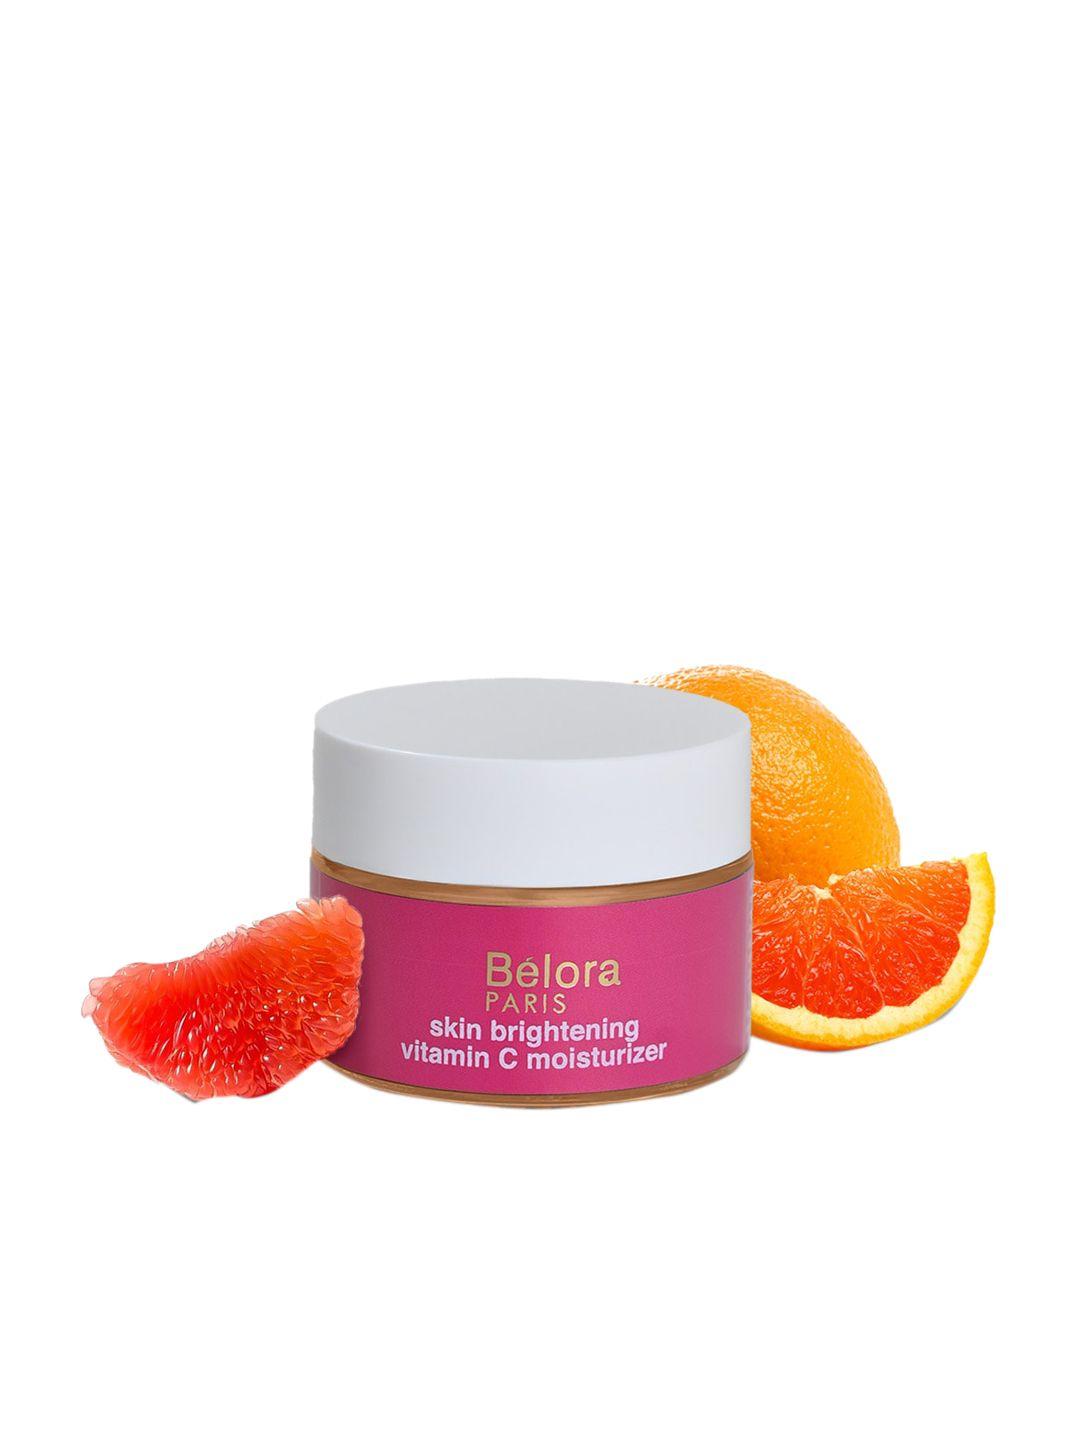 belora paris skin brightening vitamin c moisturizer spf50 for hyperpigmentation - 50ml